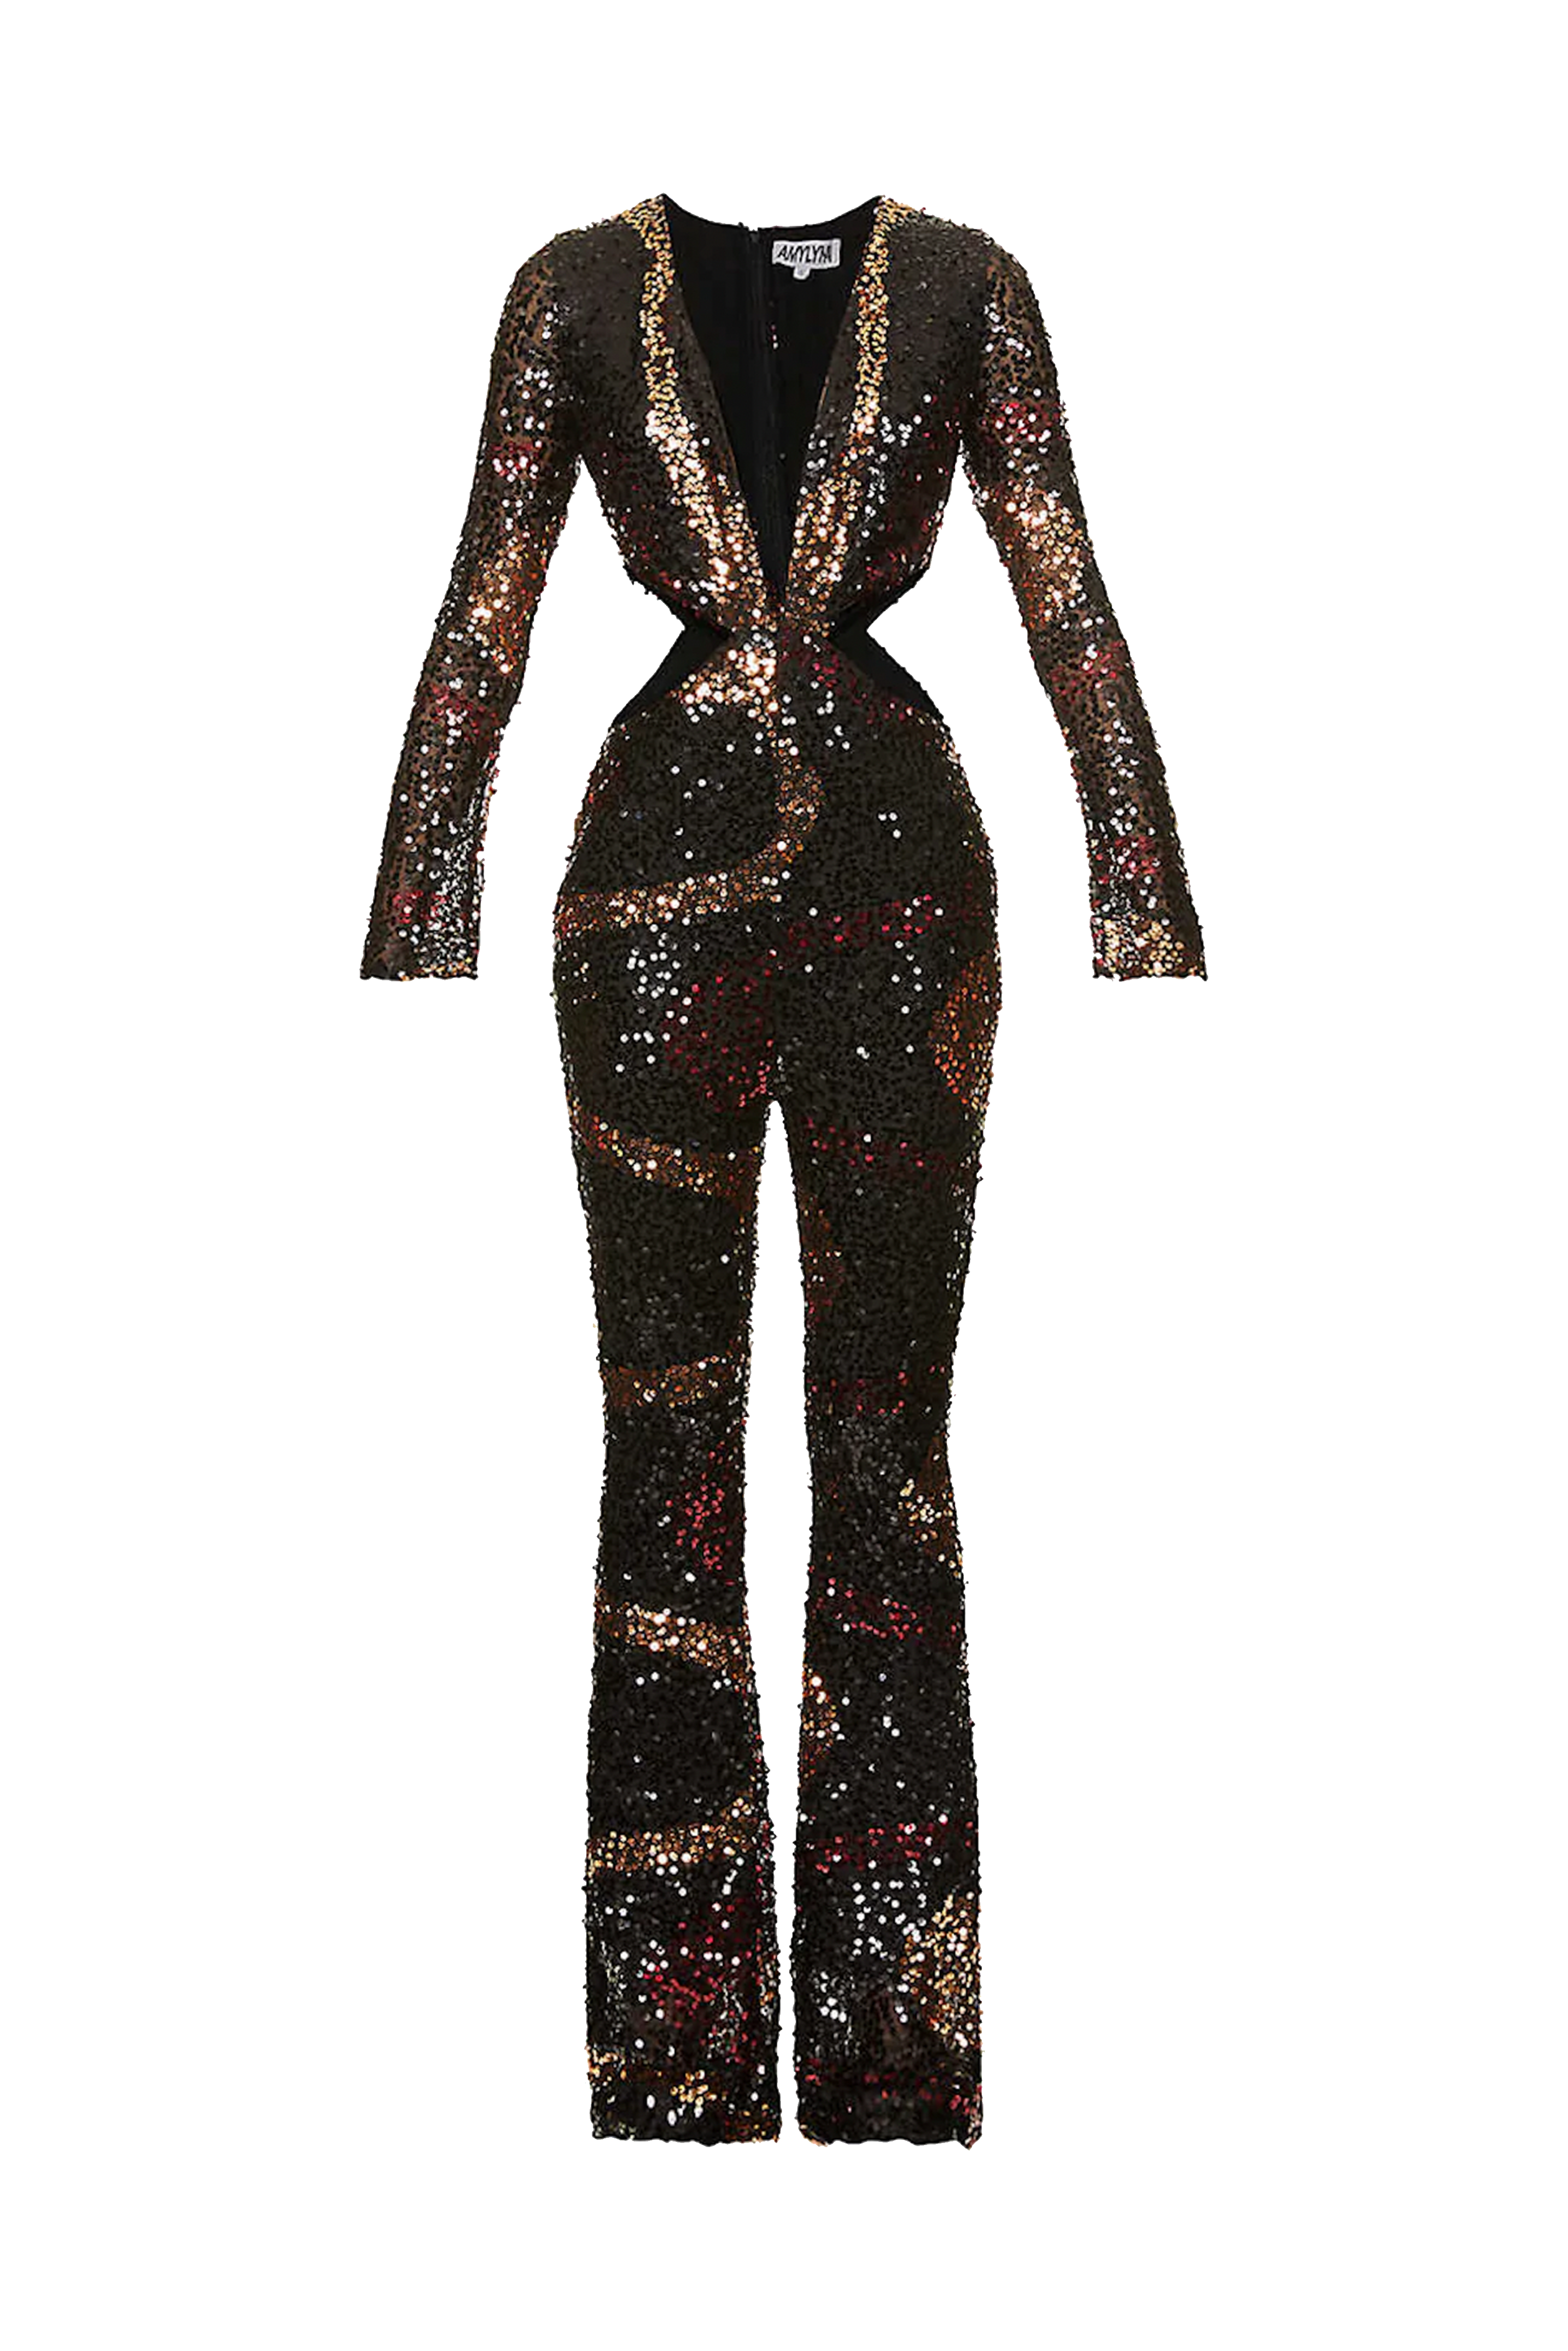 Vegas Black Sequin Embellished Wide Leg Jumpsuit - Premium Party Piece | AmyLynn